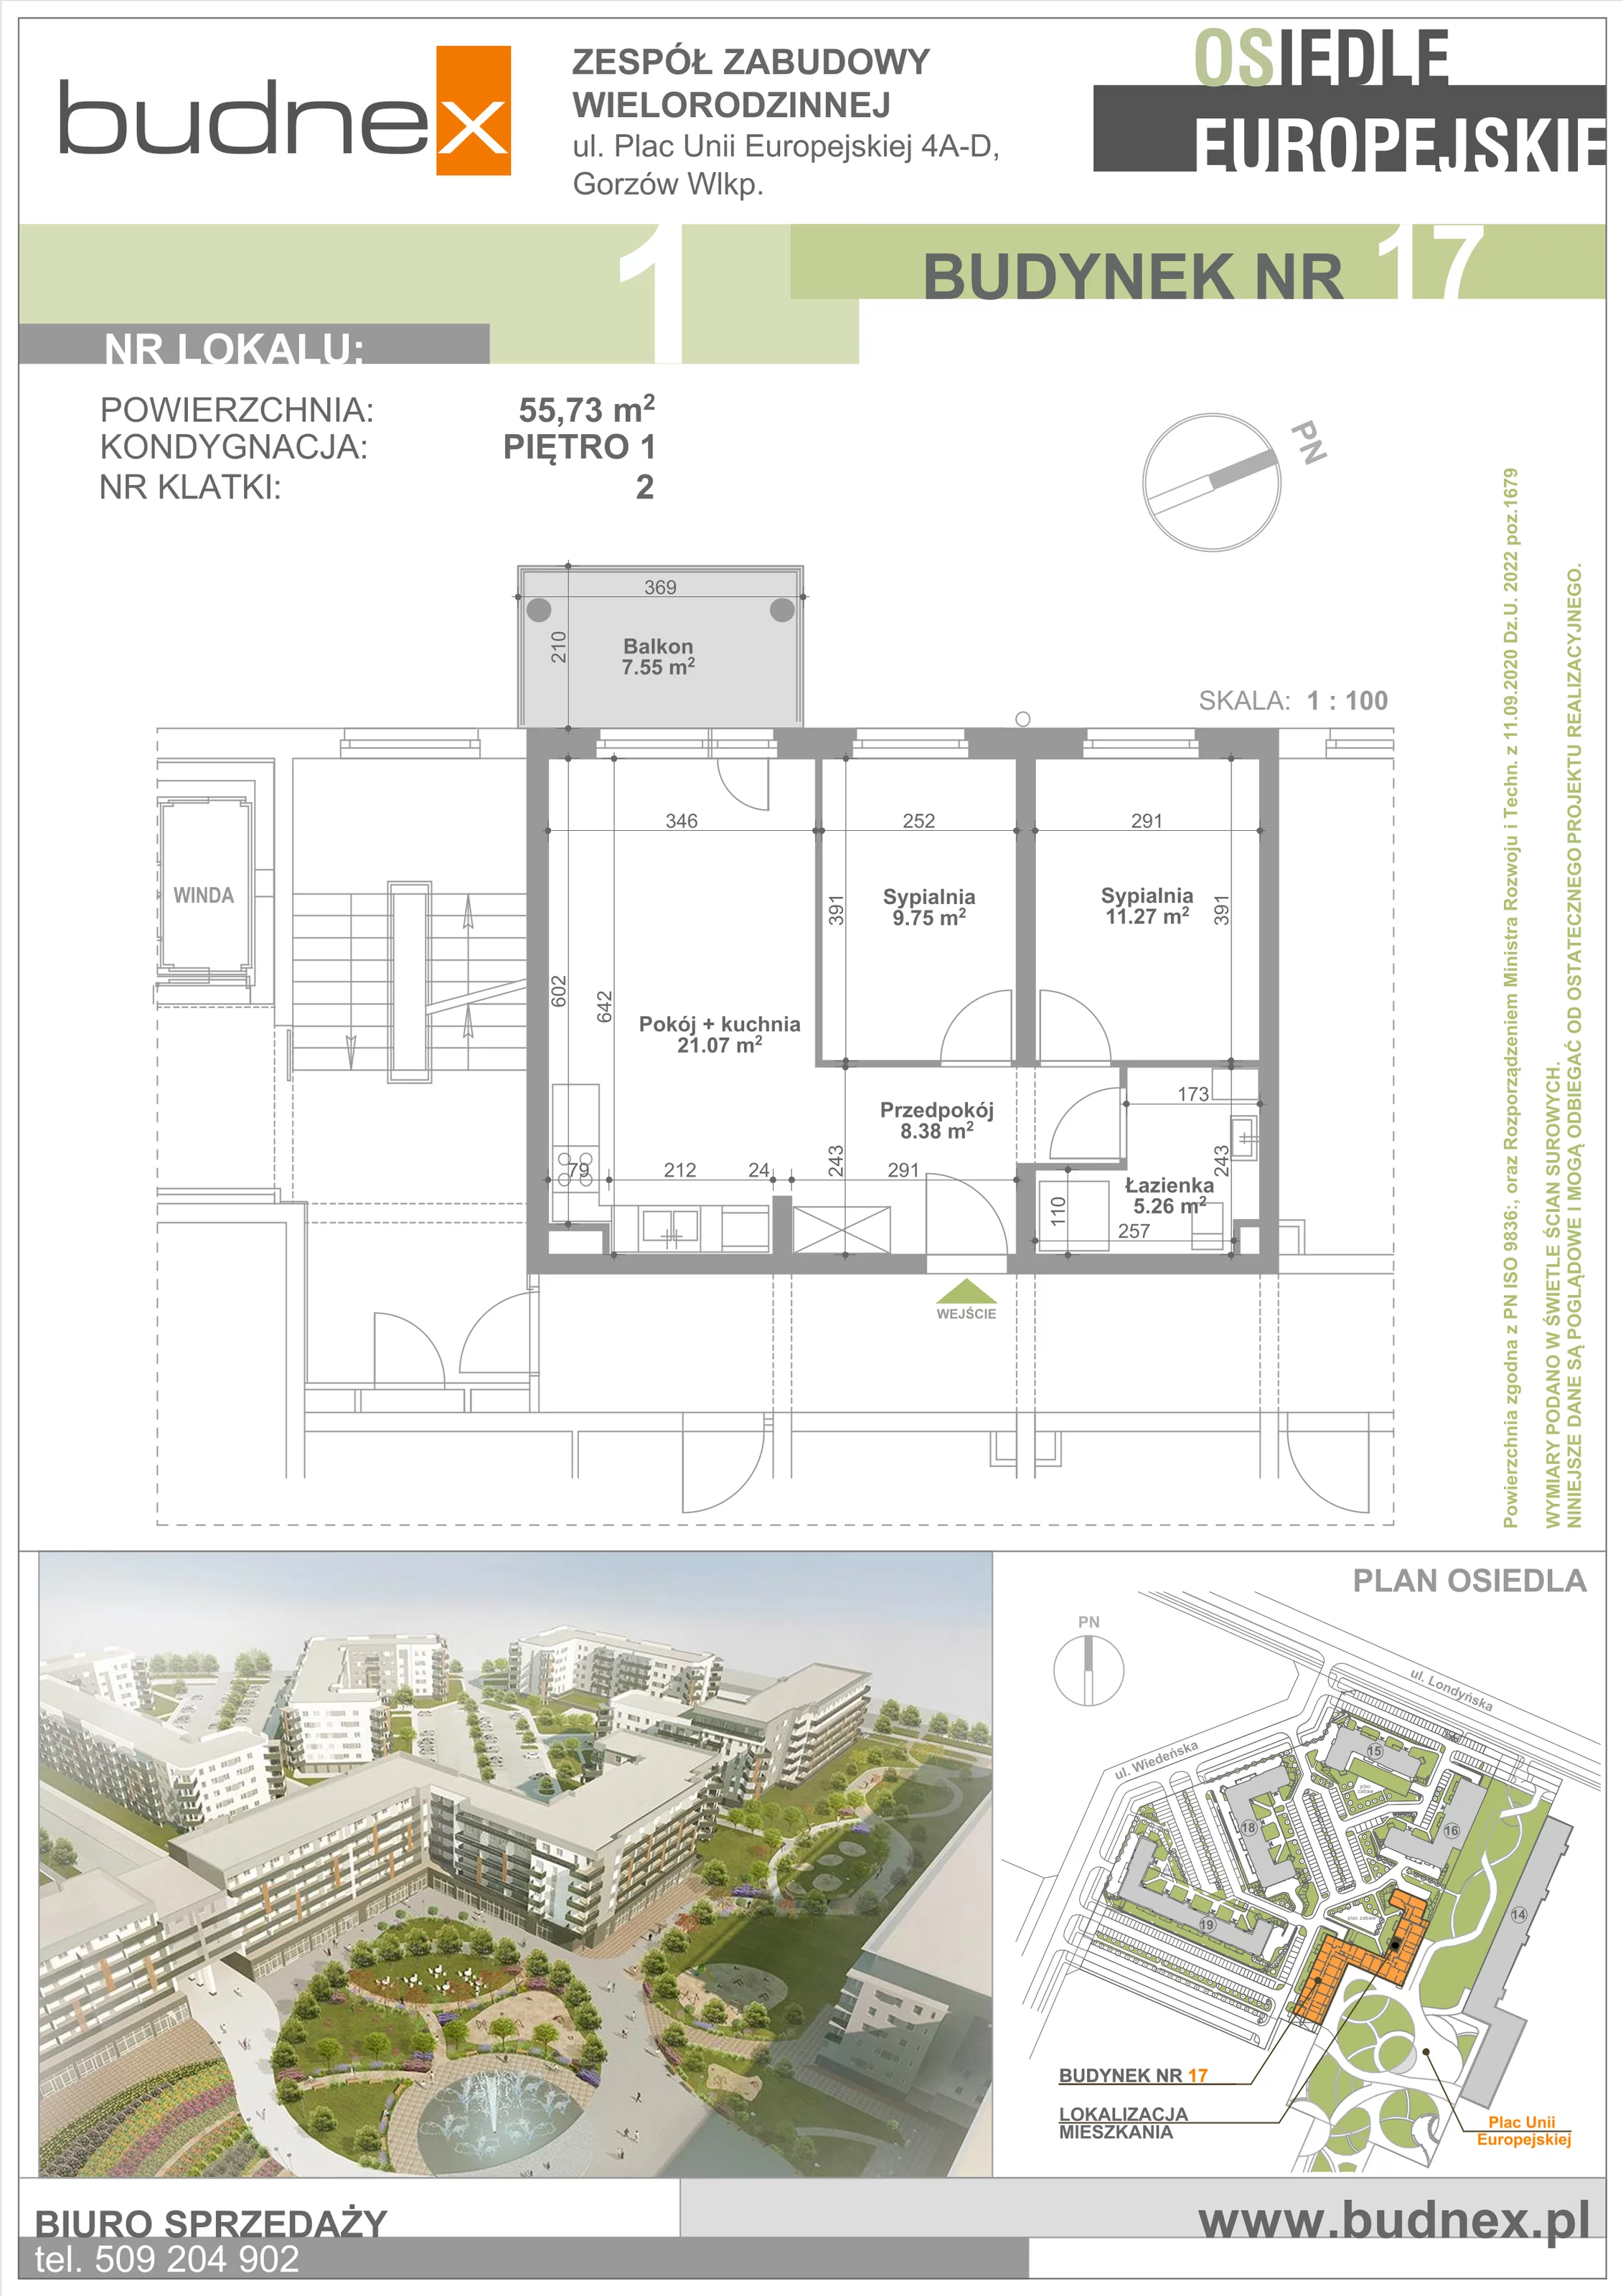 Mieszkanie 55,73 m², piętro 1, oferta nr 2/M1, Osiedle Europejskie - Budynek 17, Gorzów Wielkopolski, Plac Unii Europejskiej 4A-D